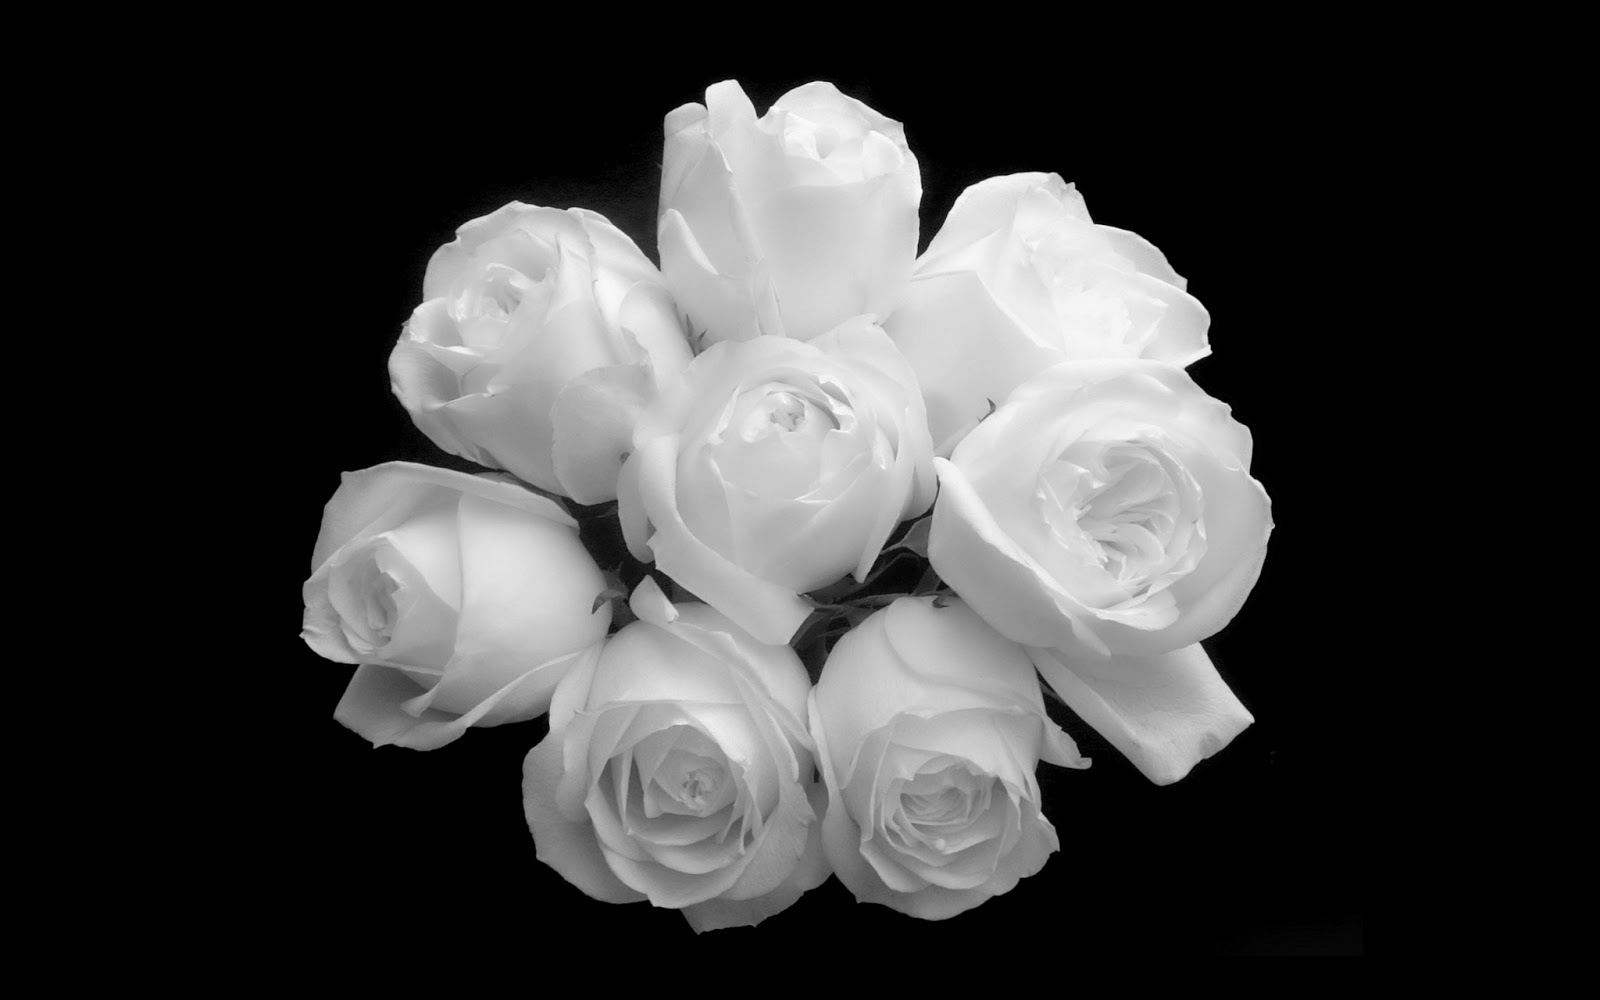 Beauty White Rose In The Dark Wallpaper Me